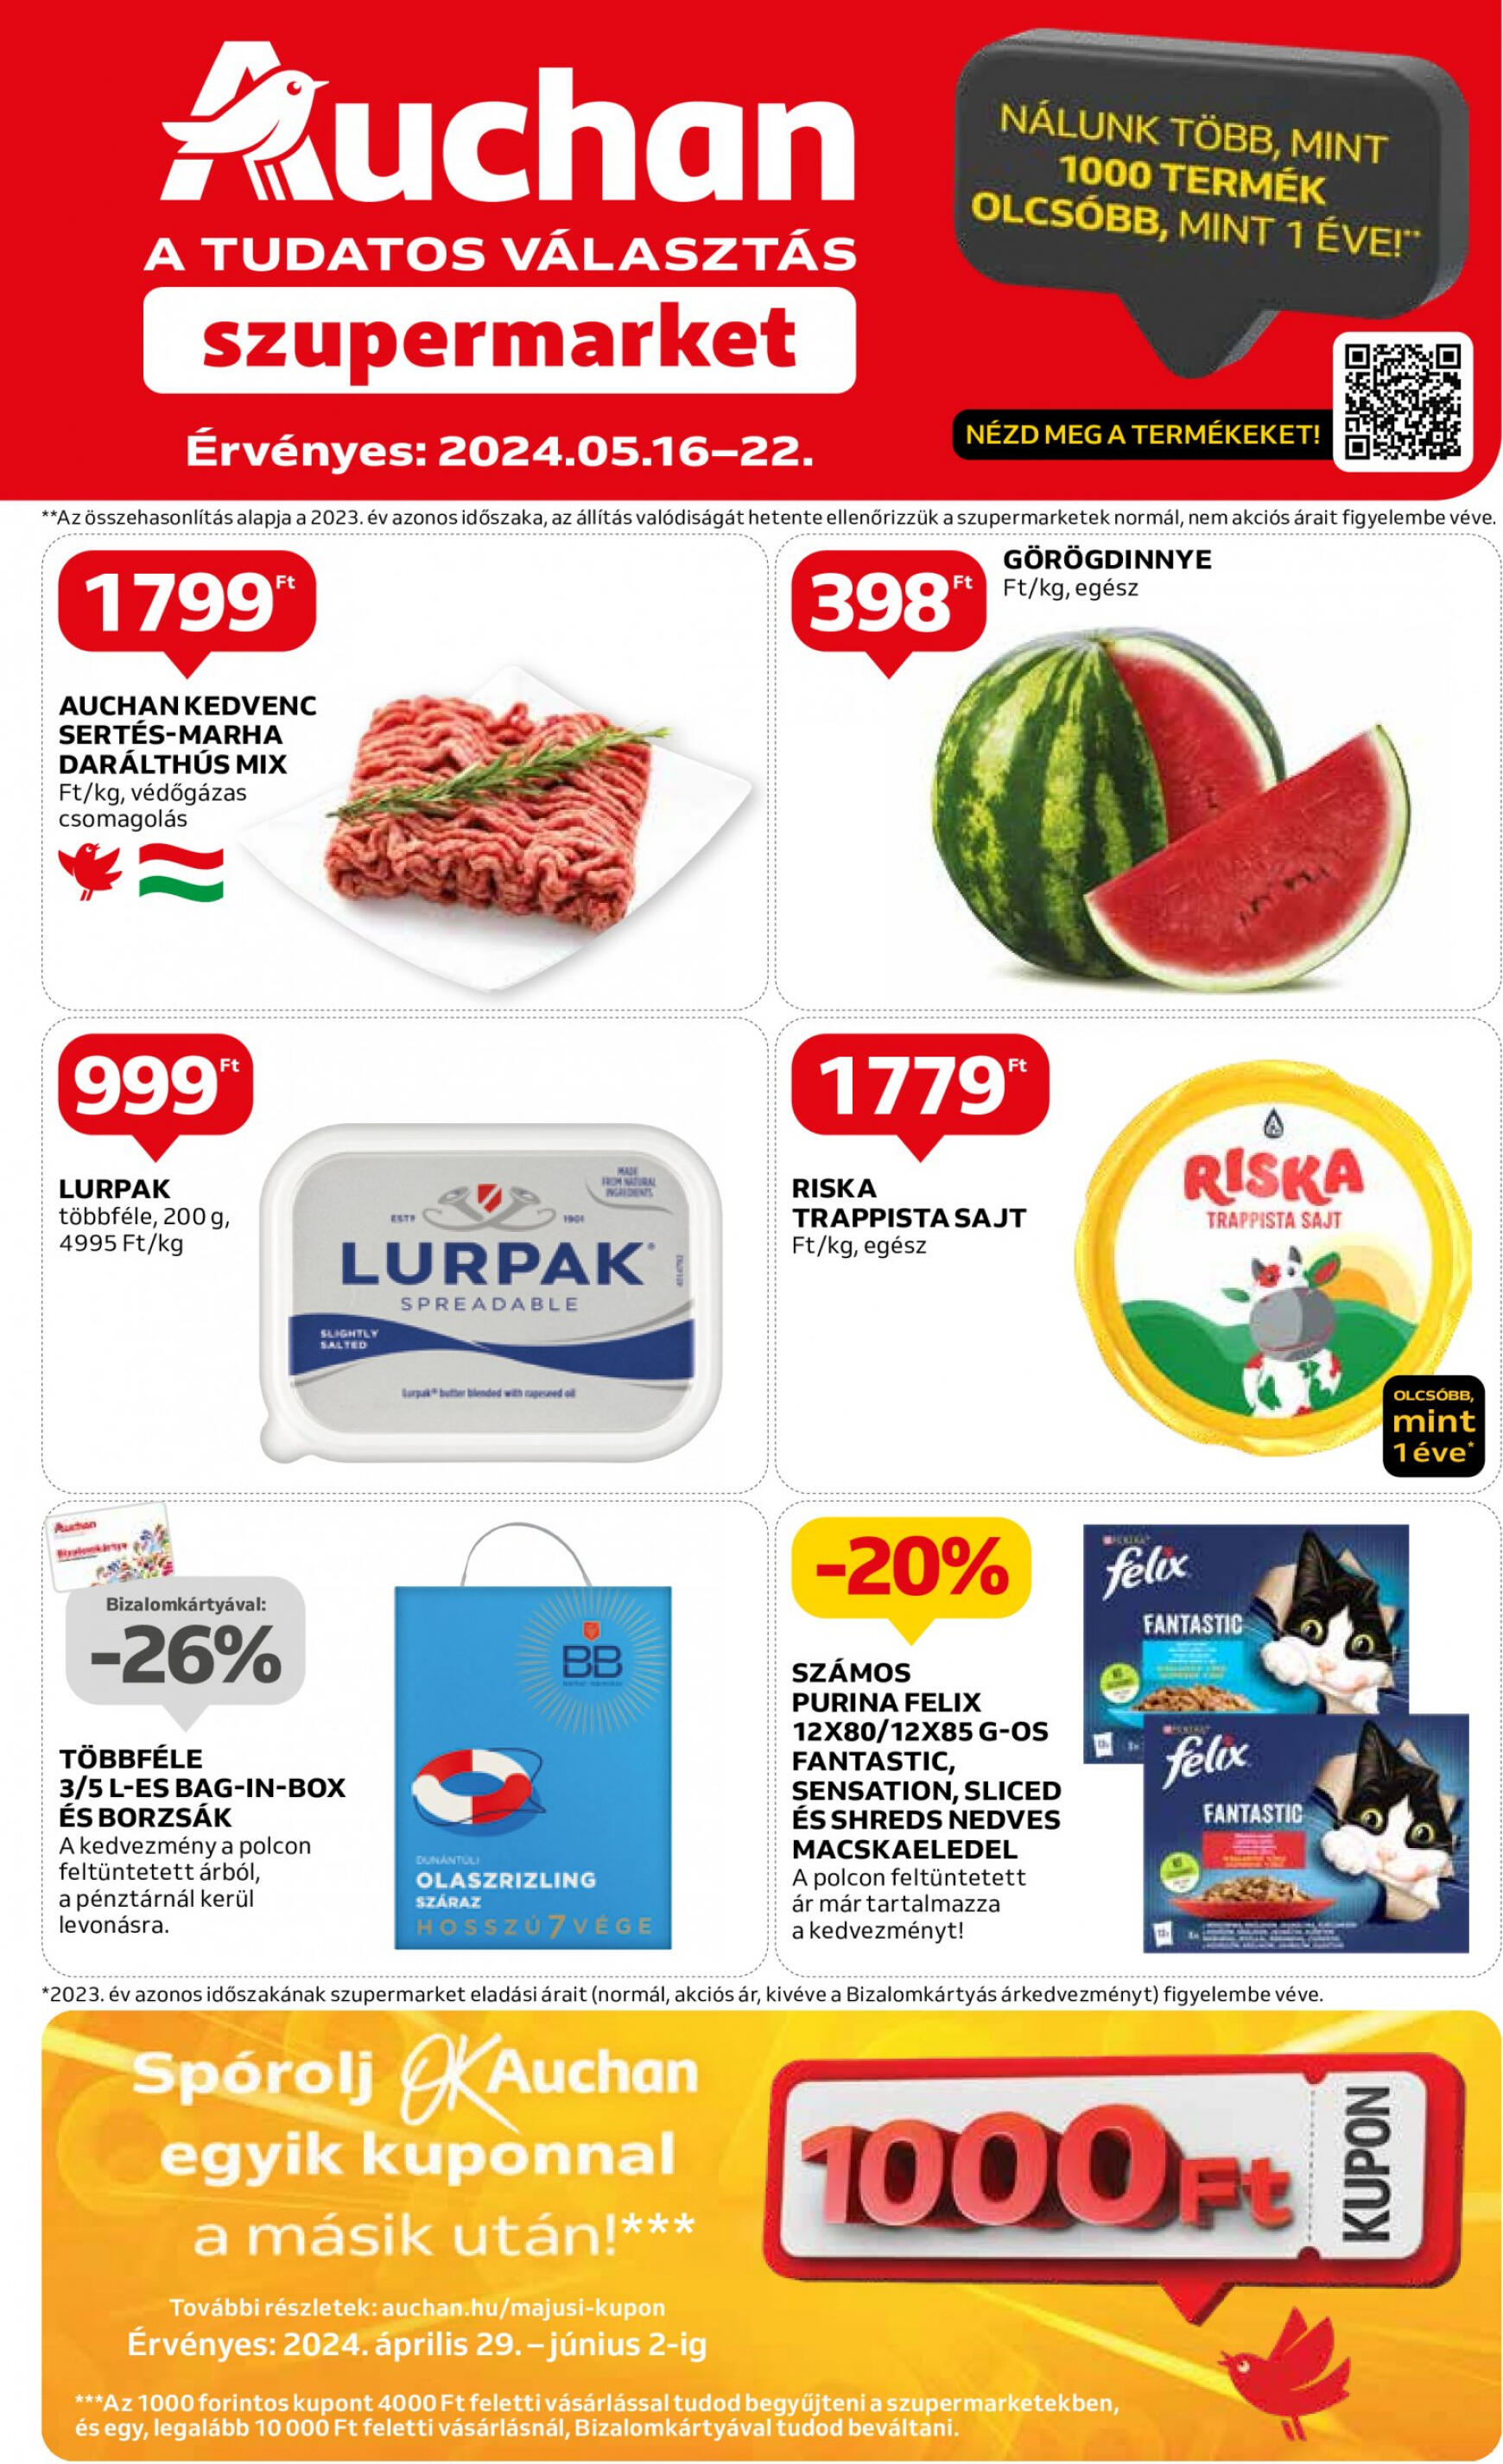 auchan - Aktuális újság Auchan szupermarket 05.16. - 05.22. - page: 1